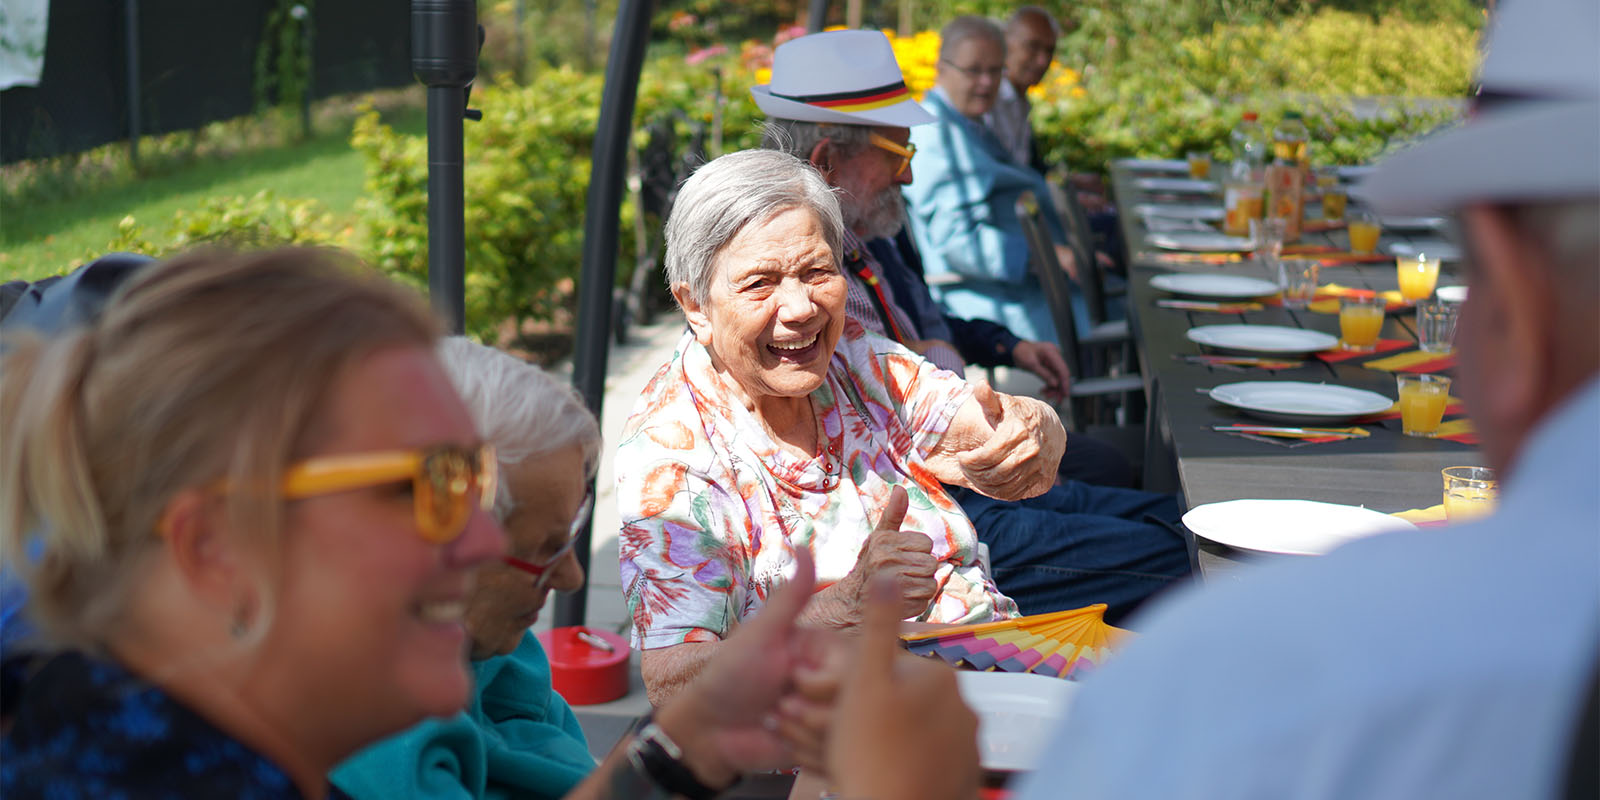 Bewoners Dagelijks Leven zitten samen aan tafel op het terras in de zon. De bewoner in het midden moet heel har lachen.